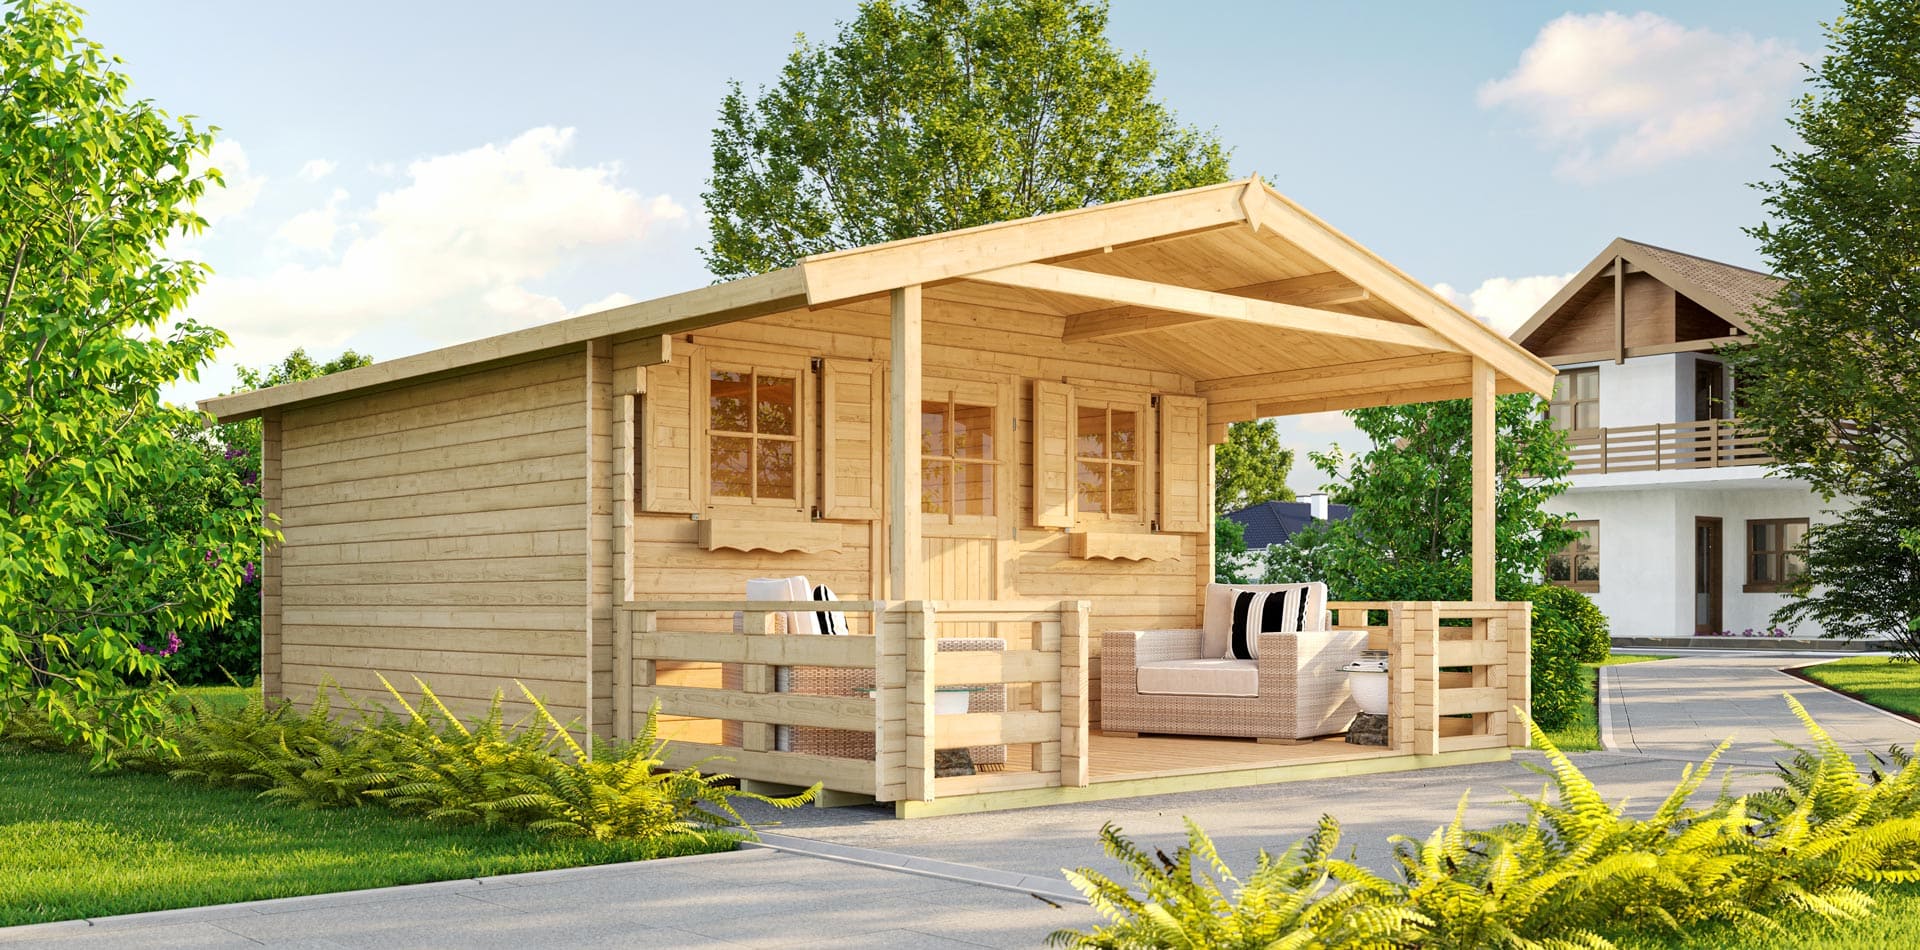 Gartenhaus aus Holz von WEKA mit angebauter Terrasse und Sitzmöbeln in einer Gartenlandschaft